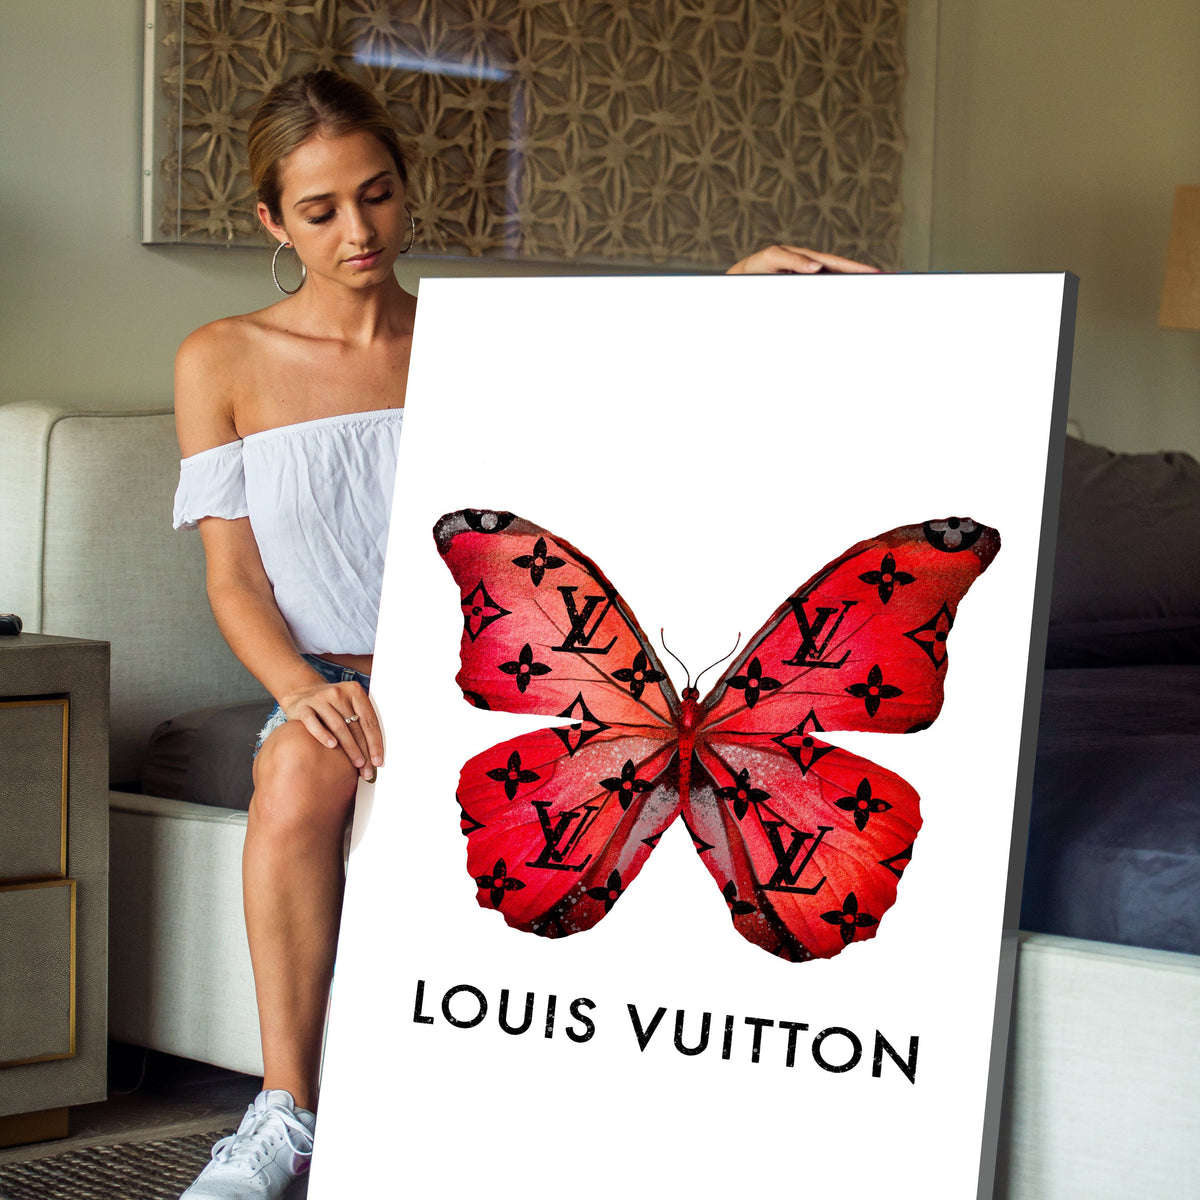 Lv butterflies HD wallpapers